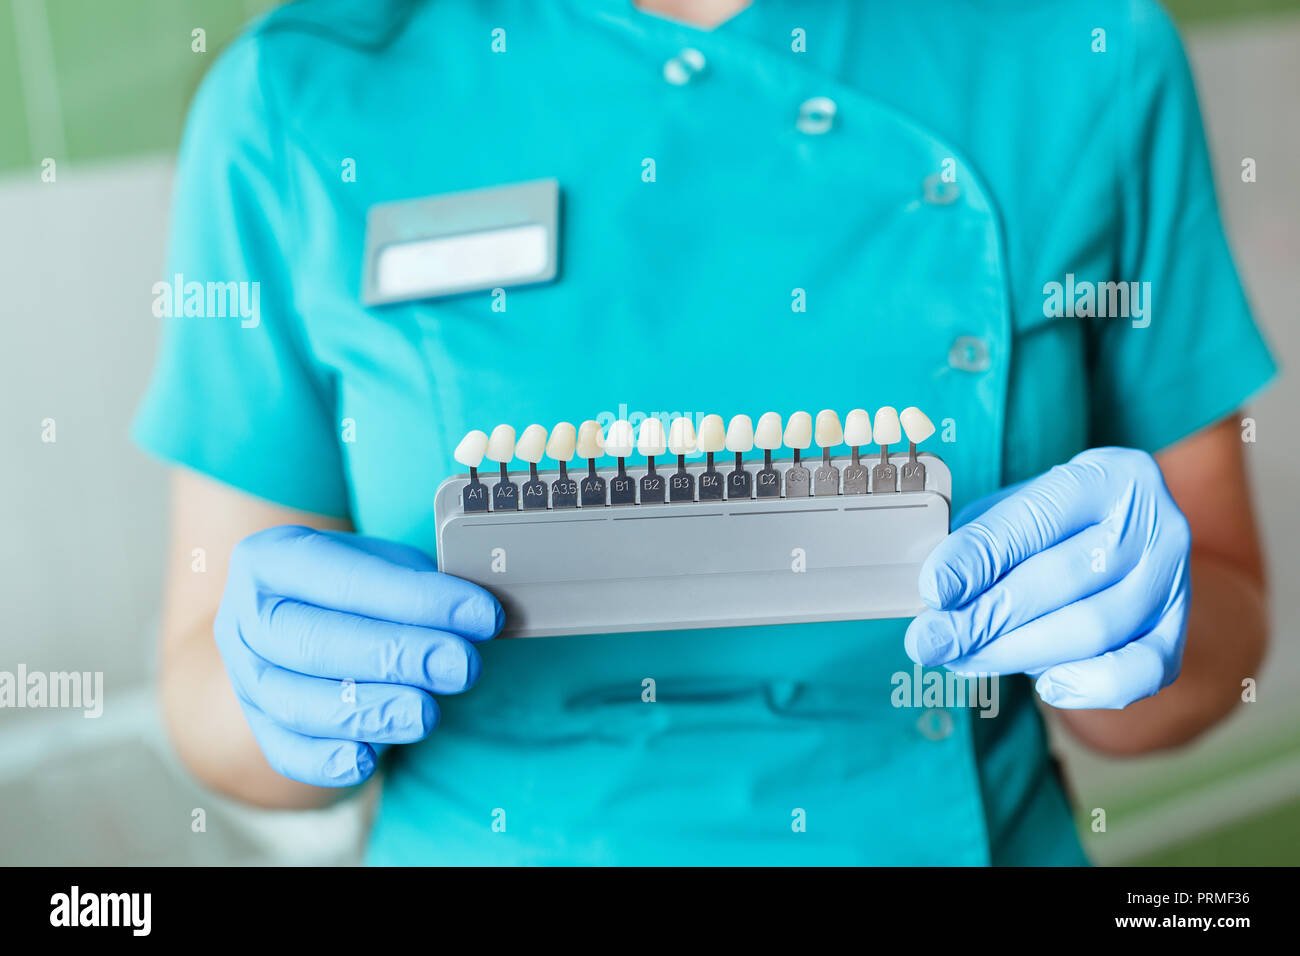 Zahnarzt in Händen halten, die mit den Schattierungen oder Farbe der Implantate oder der Prozess der Zähne, die. Stockfoto